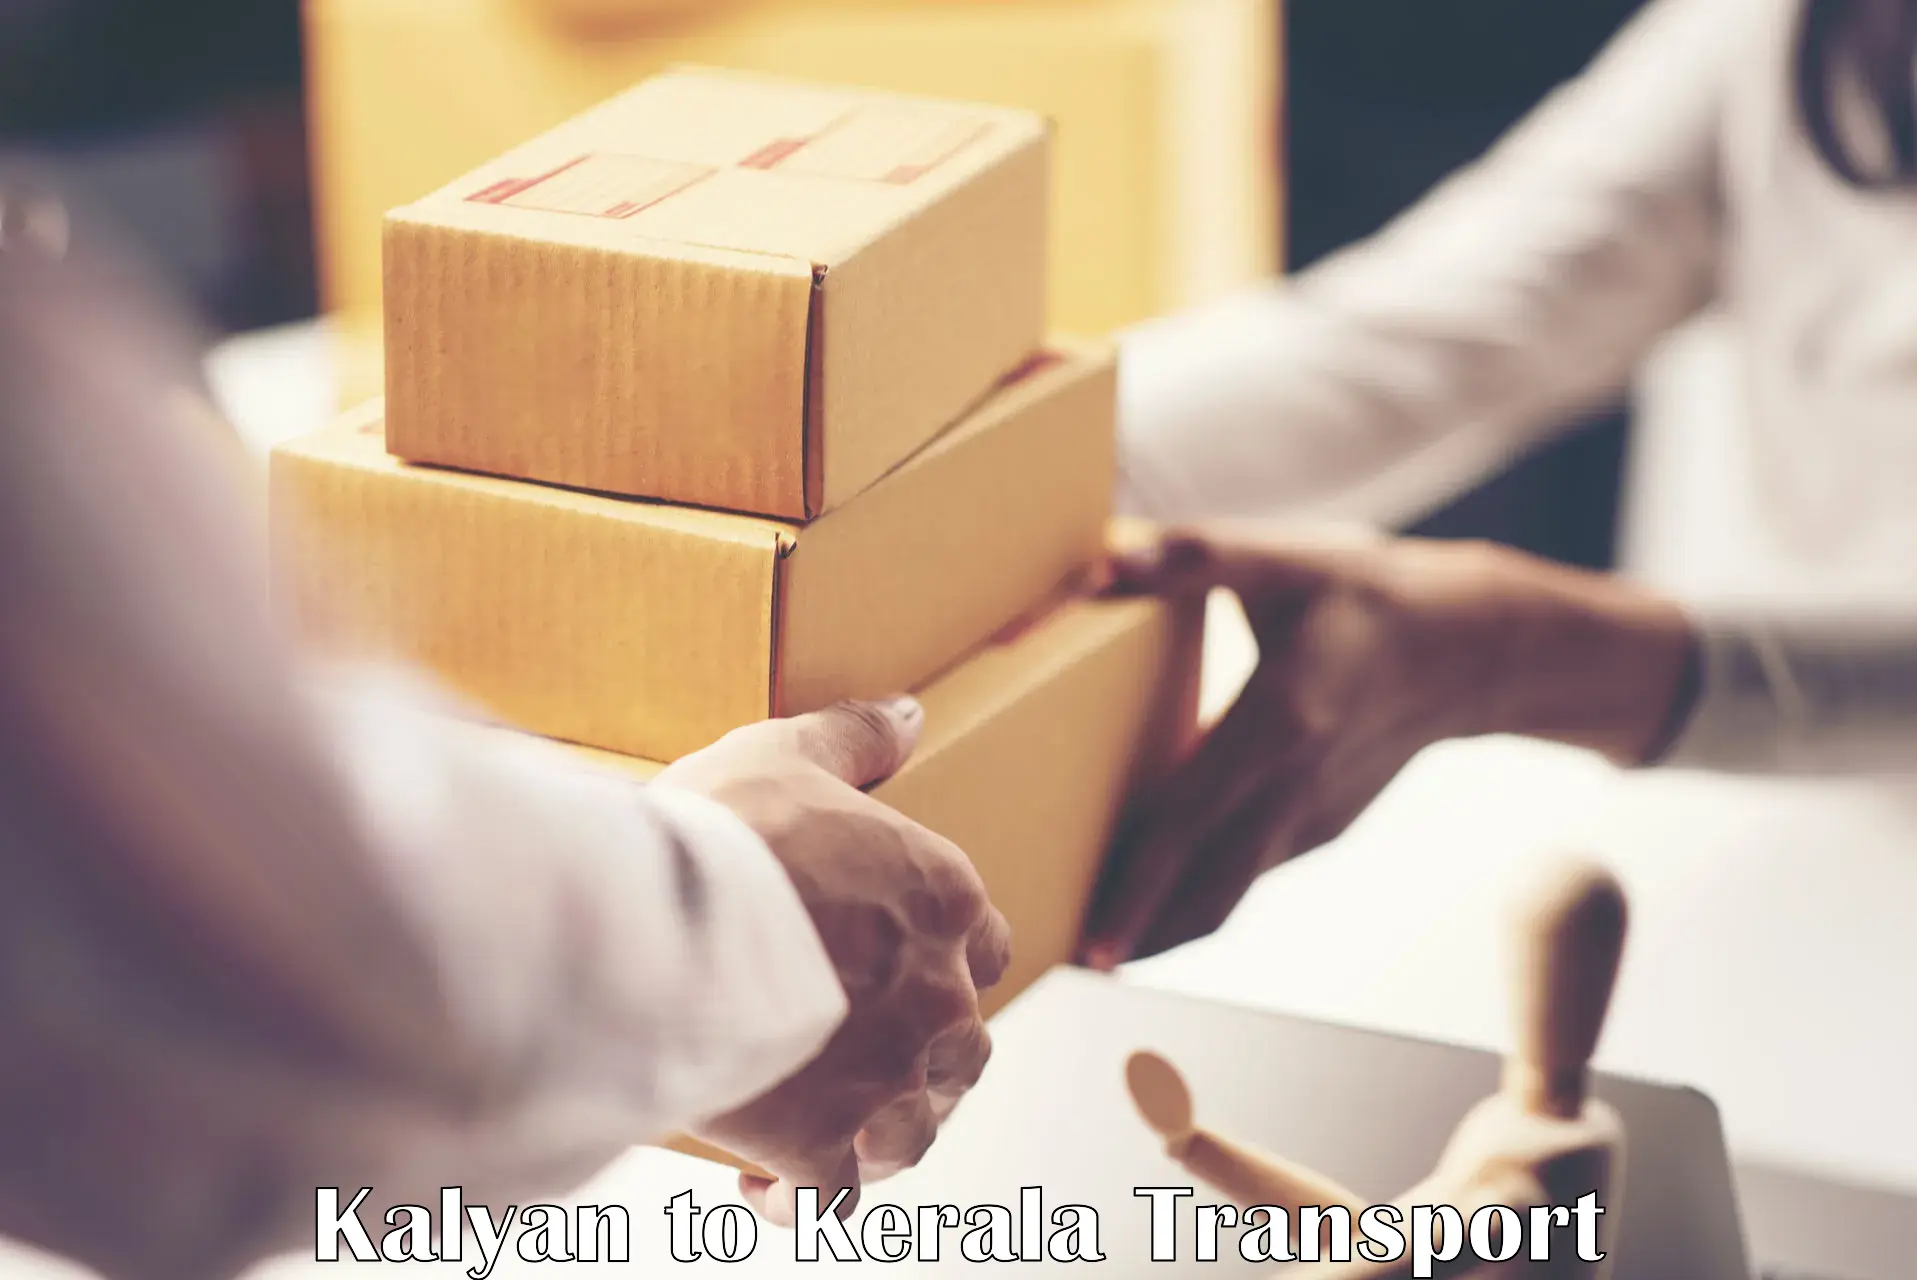 Online transport service Kalyan to Palakkad